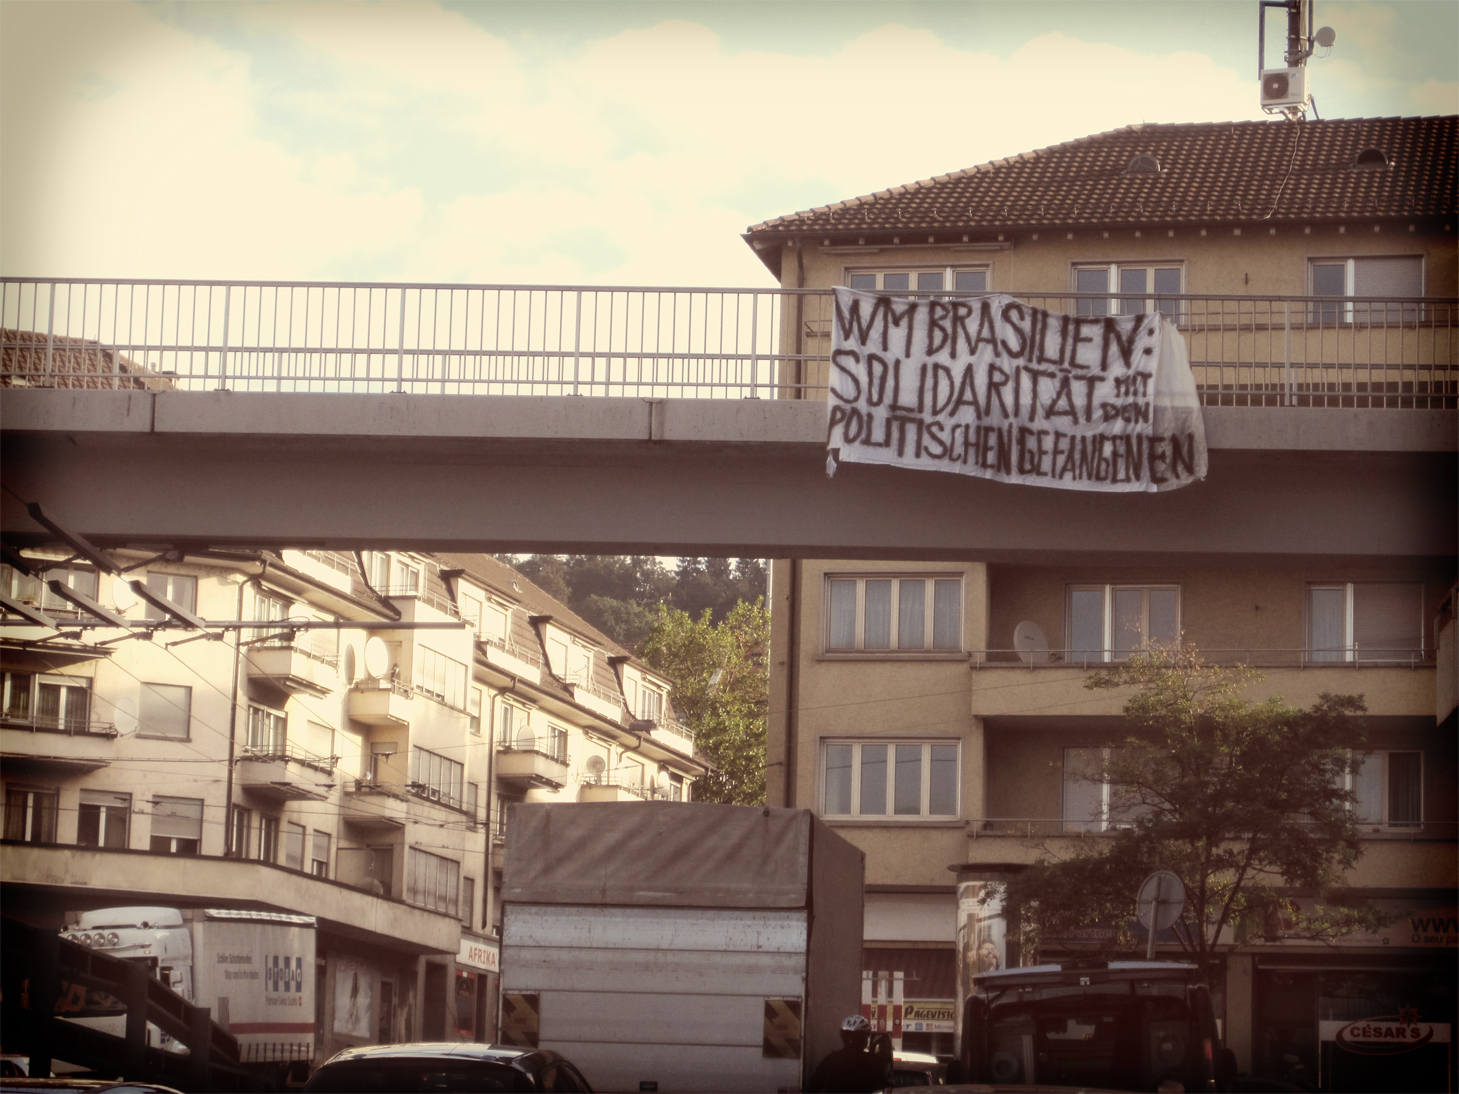 Solidarität mit den politischen Gefangenen in Brasilien